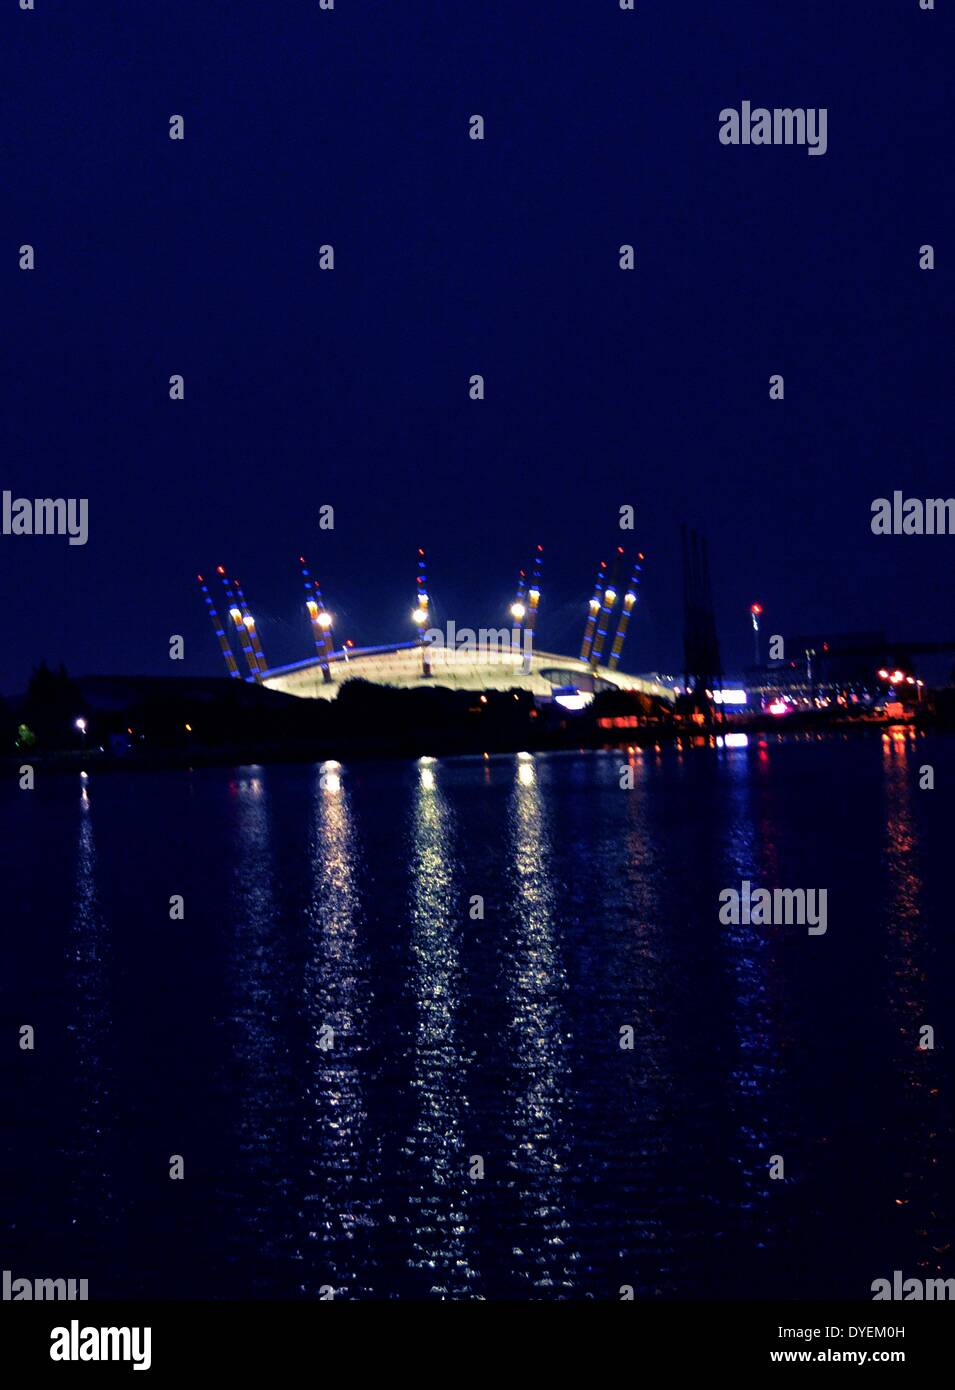 Vue nocturne de l'02 Arena Londres 2013. Officiellement connu comme le dôme du millénaire. Banque D'Images